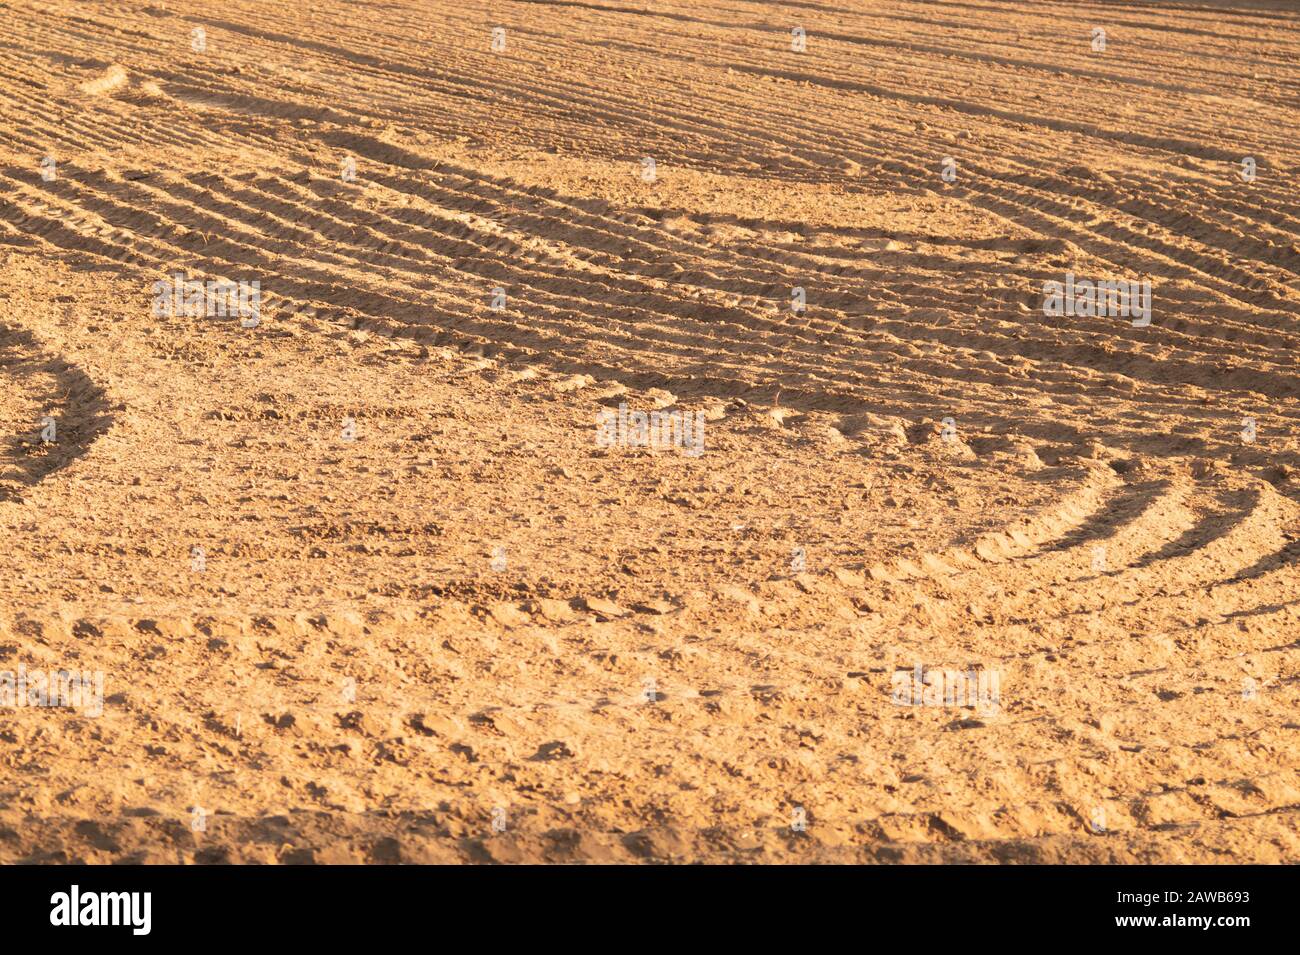 Muster von gebogenen Graten und Furchen auf einem sandigen Feld. Spuren auf dem Sand. Traktorbahnen Stockfoto